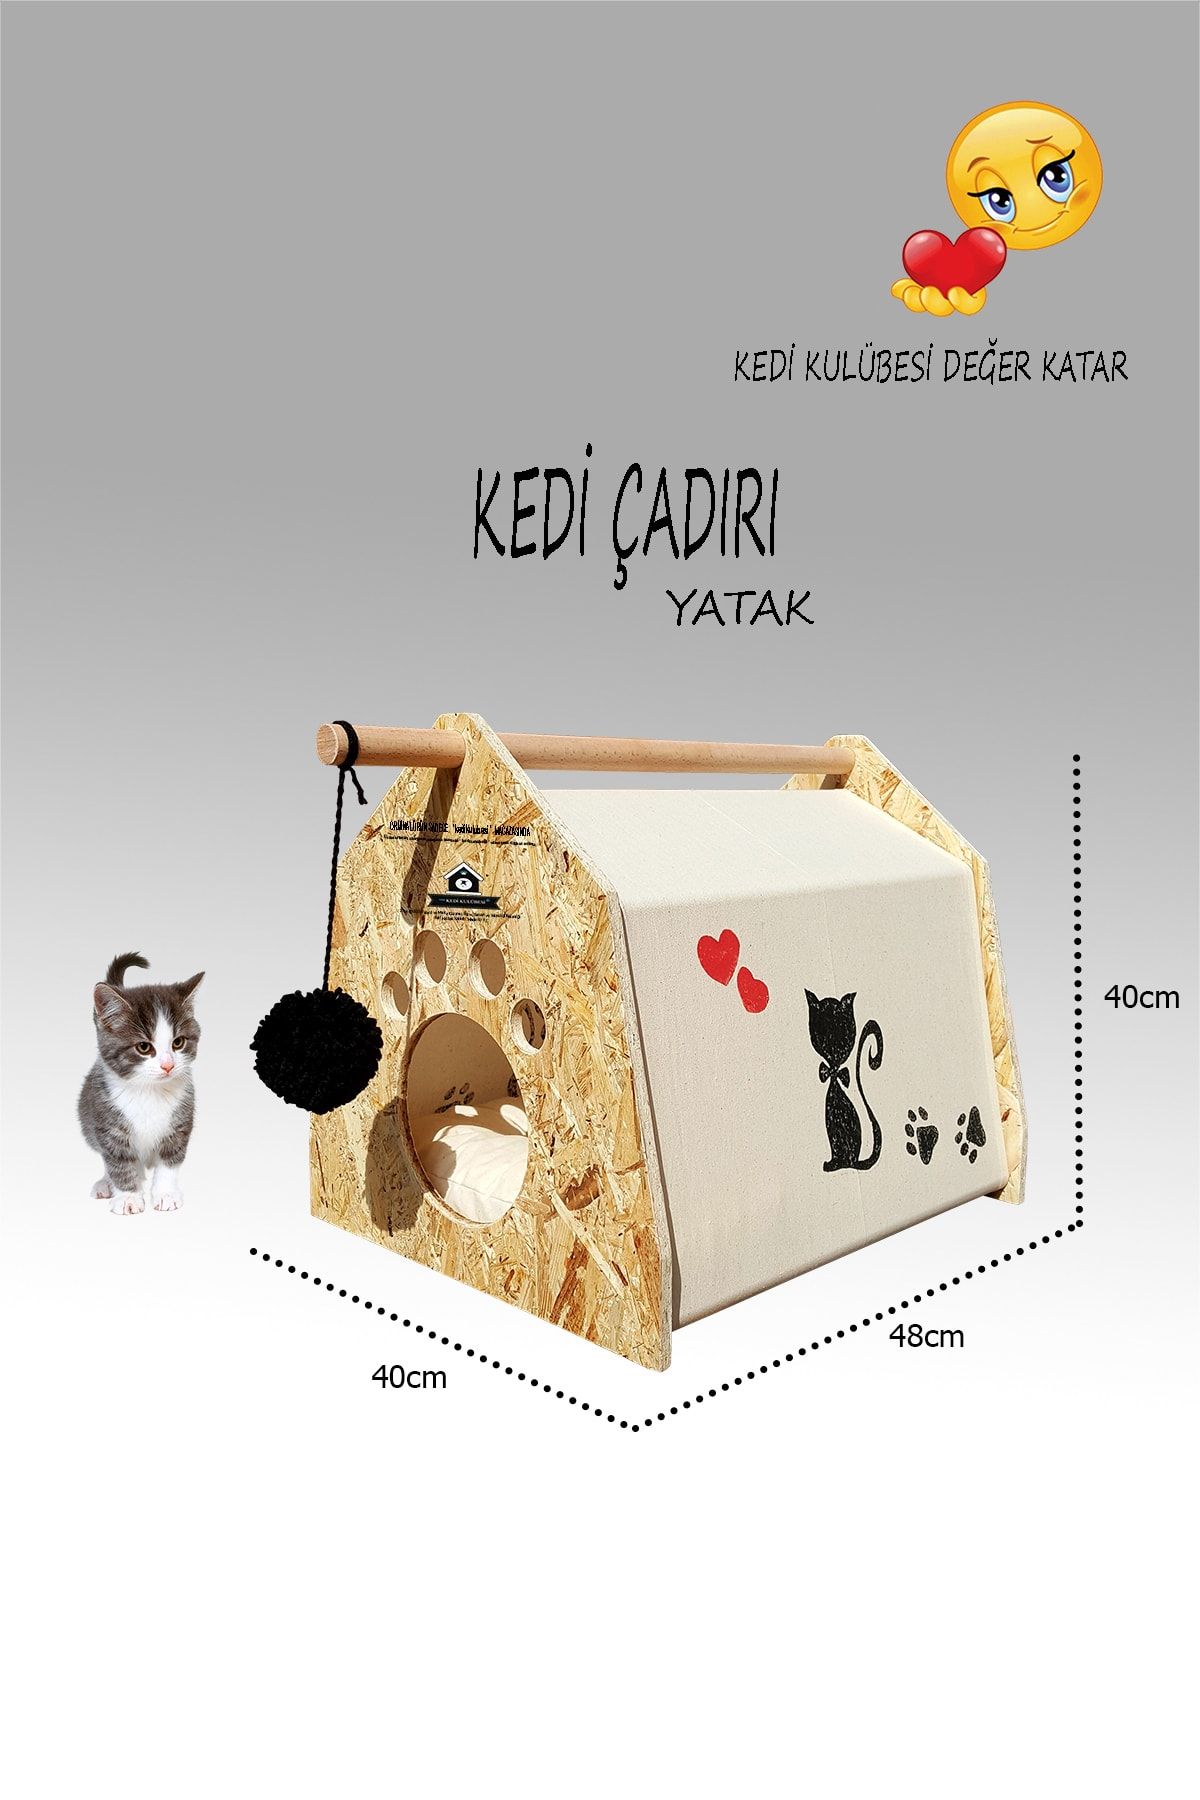 Kedigram Kedi Kulübesi Kedi Çadırı - Oyun Alanı - Kedi Evi - Kedi Kulübesi-yataklı Çadır